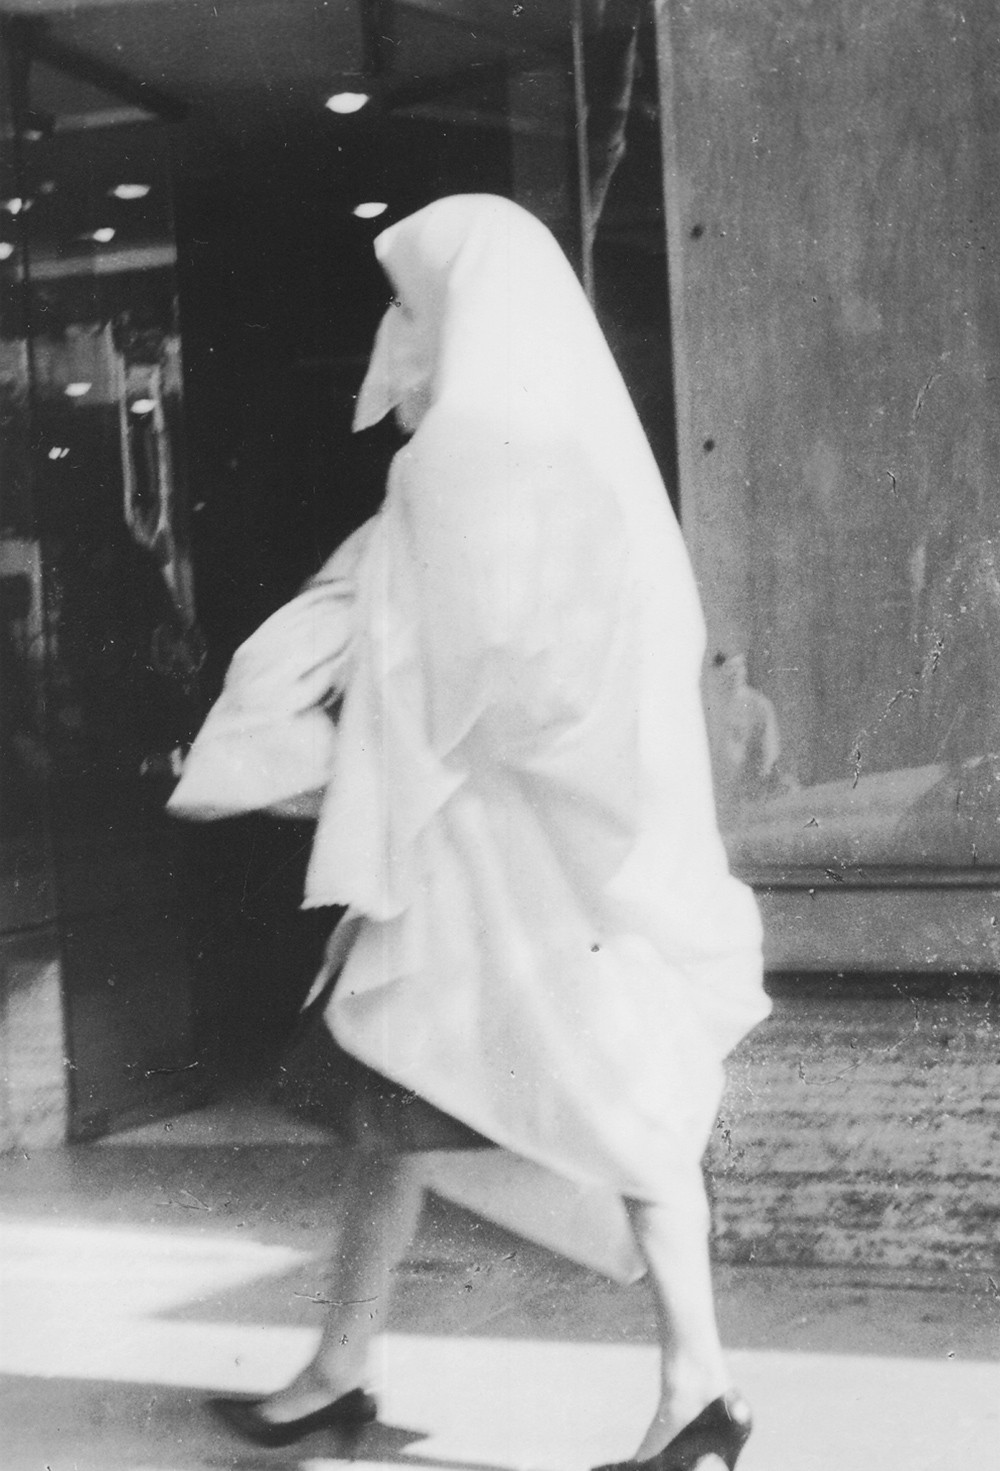  Retrato de uma mulher argelina ou marroquina, fotografia de Ernesto de Sousa, 1962.  